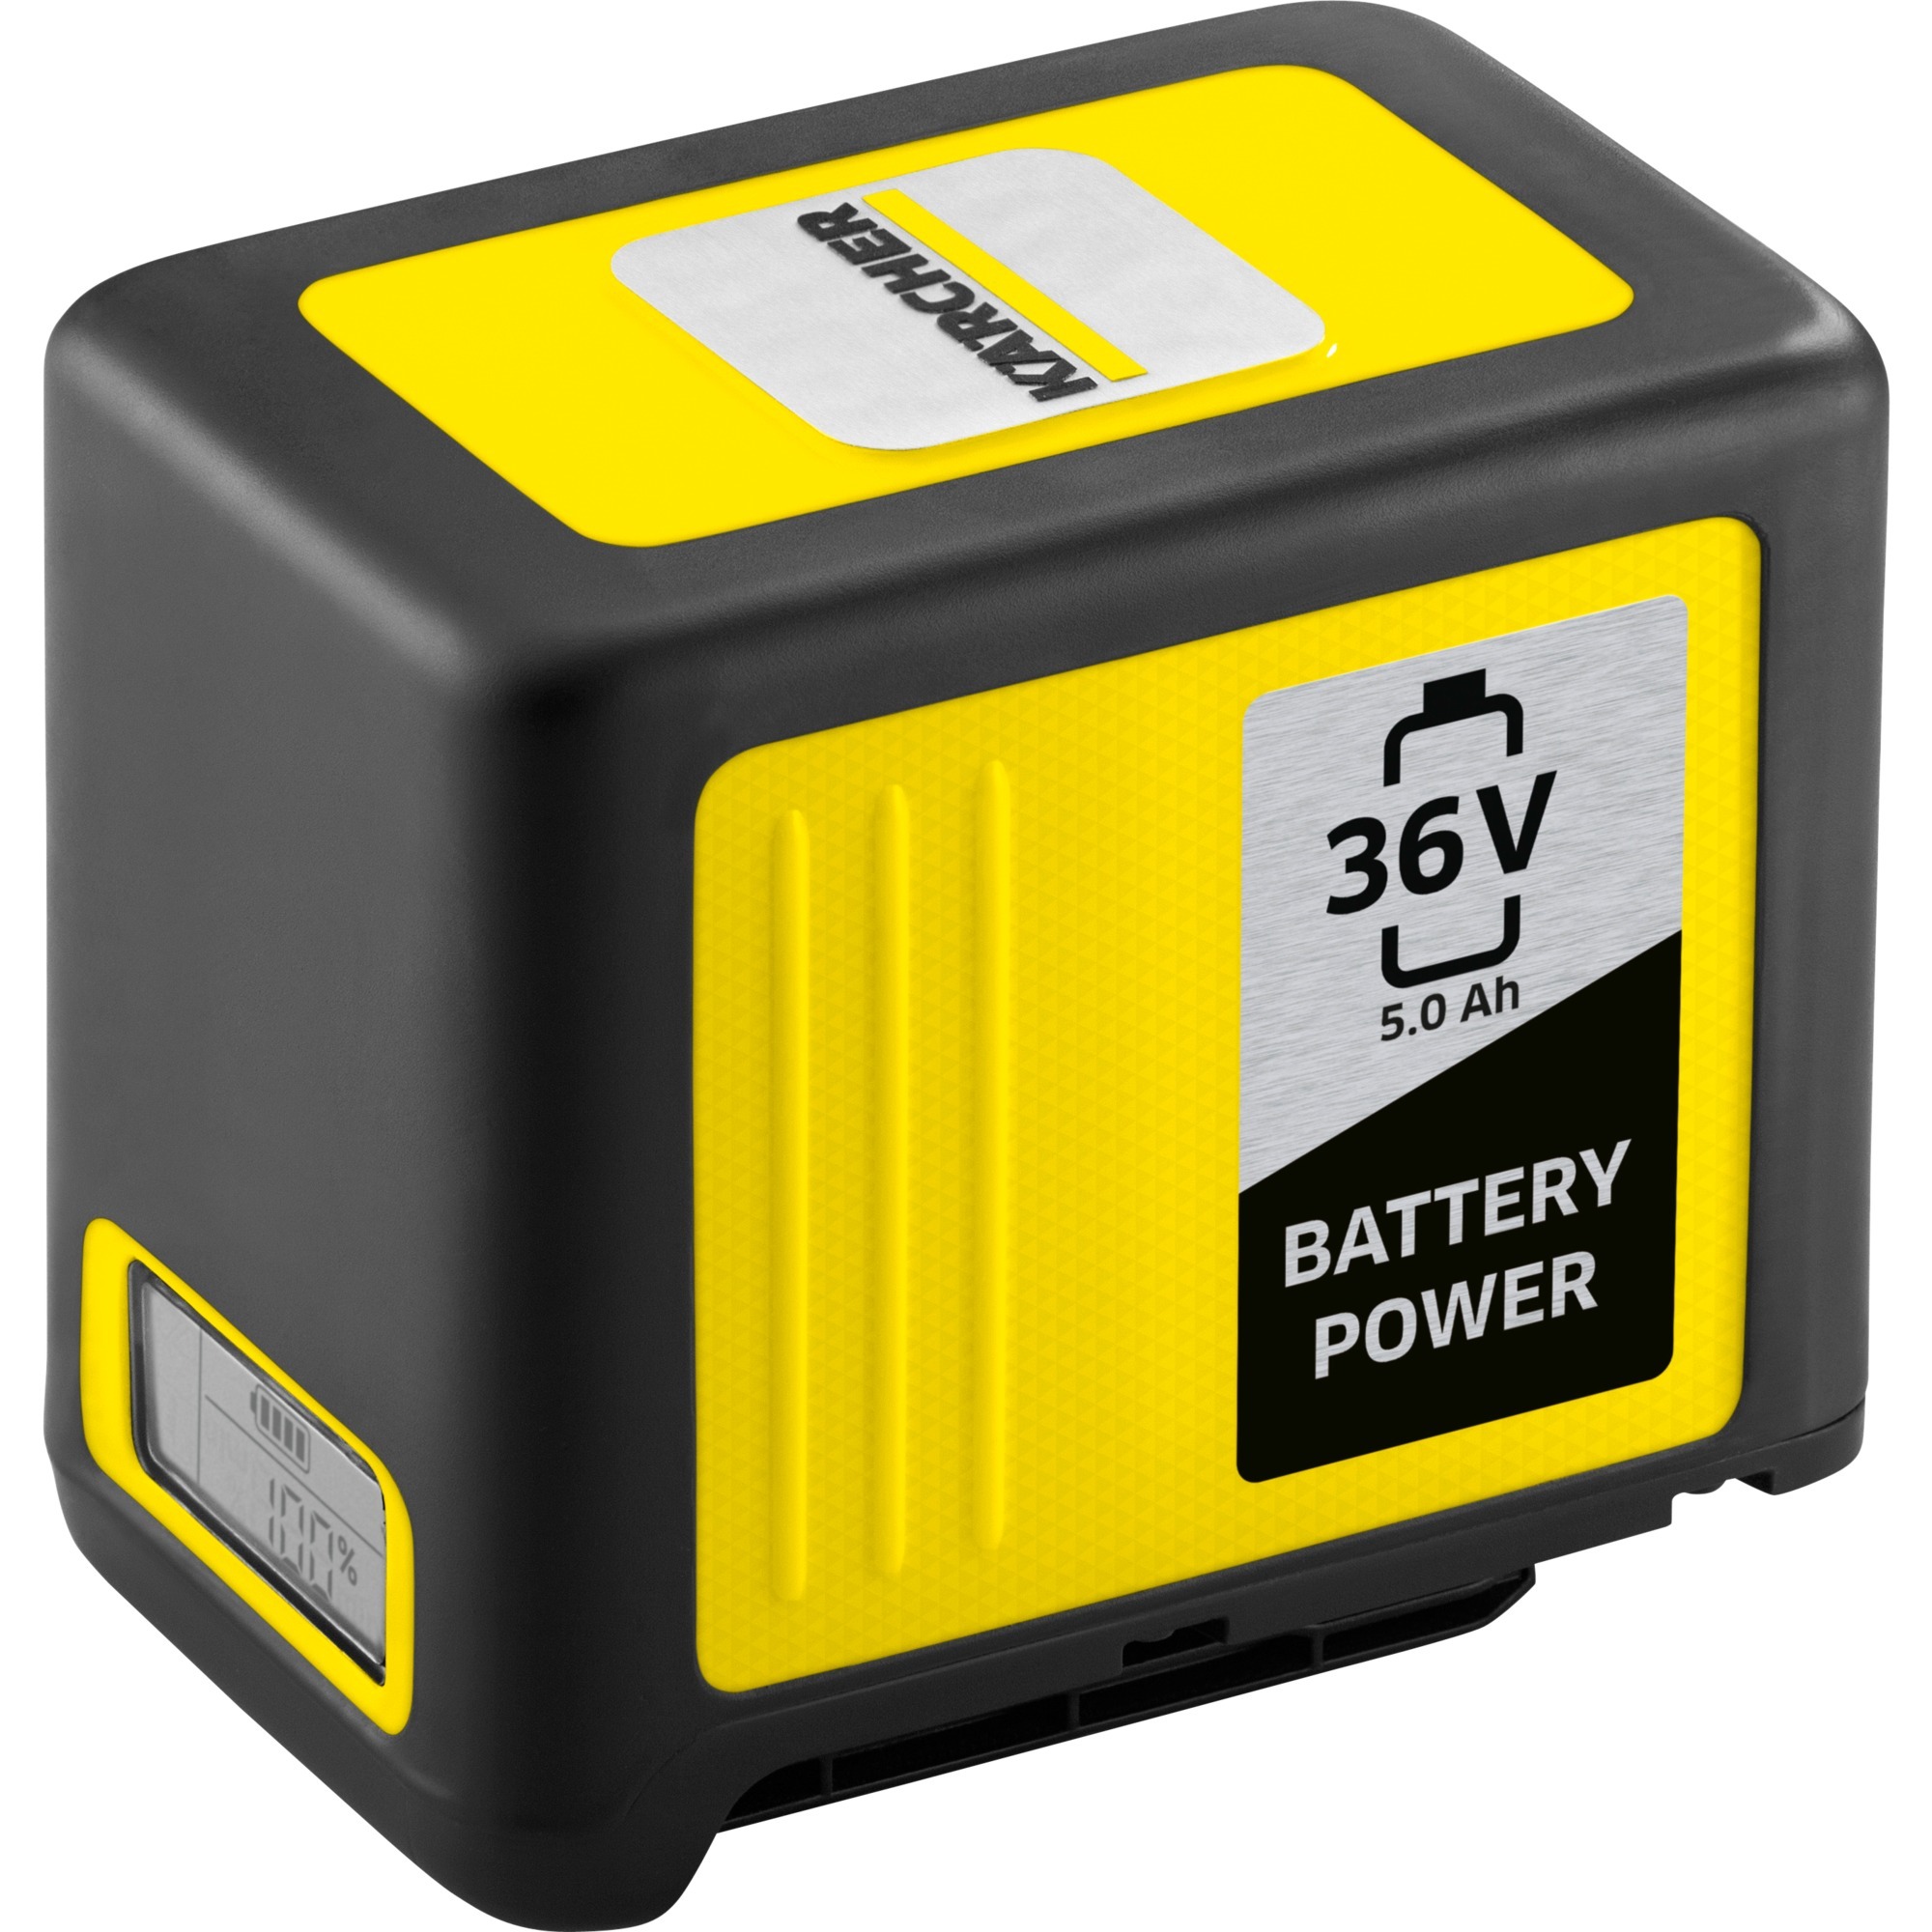 Image of Alternate - Battery Power 36/50, Akku online einkaufen bei Alternate